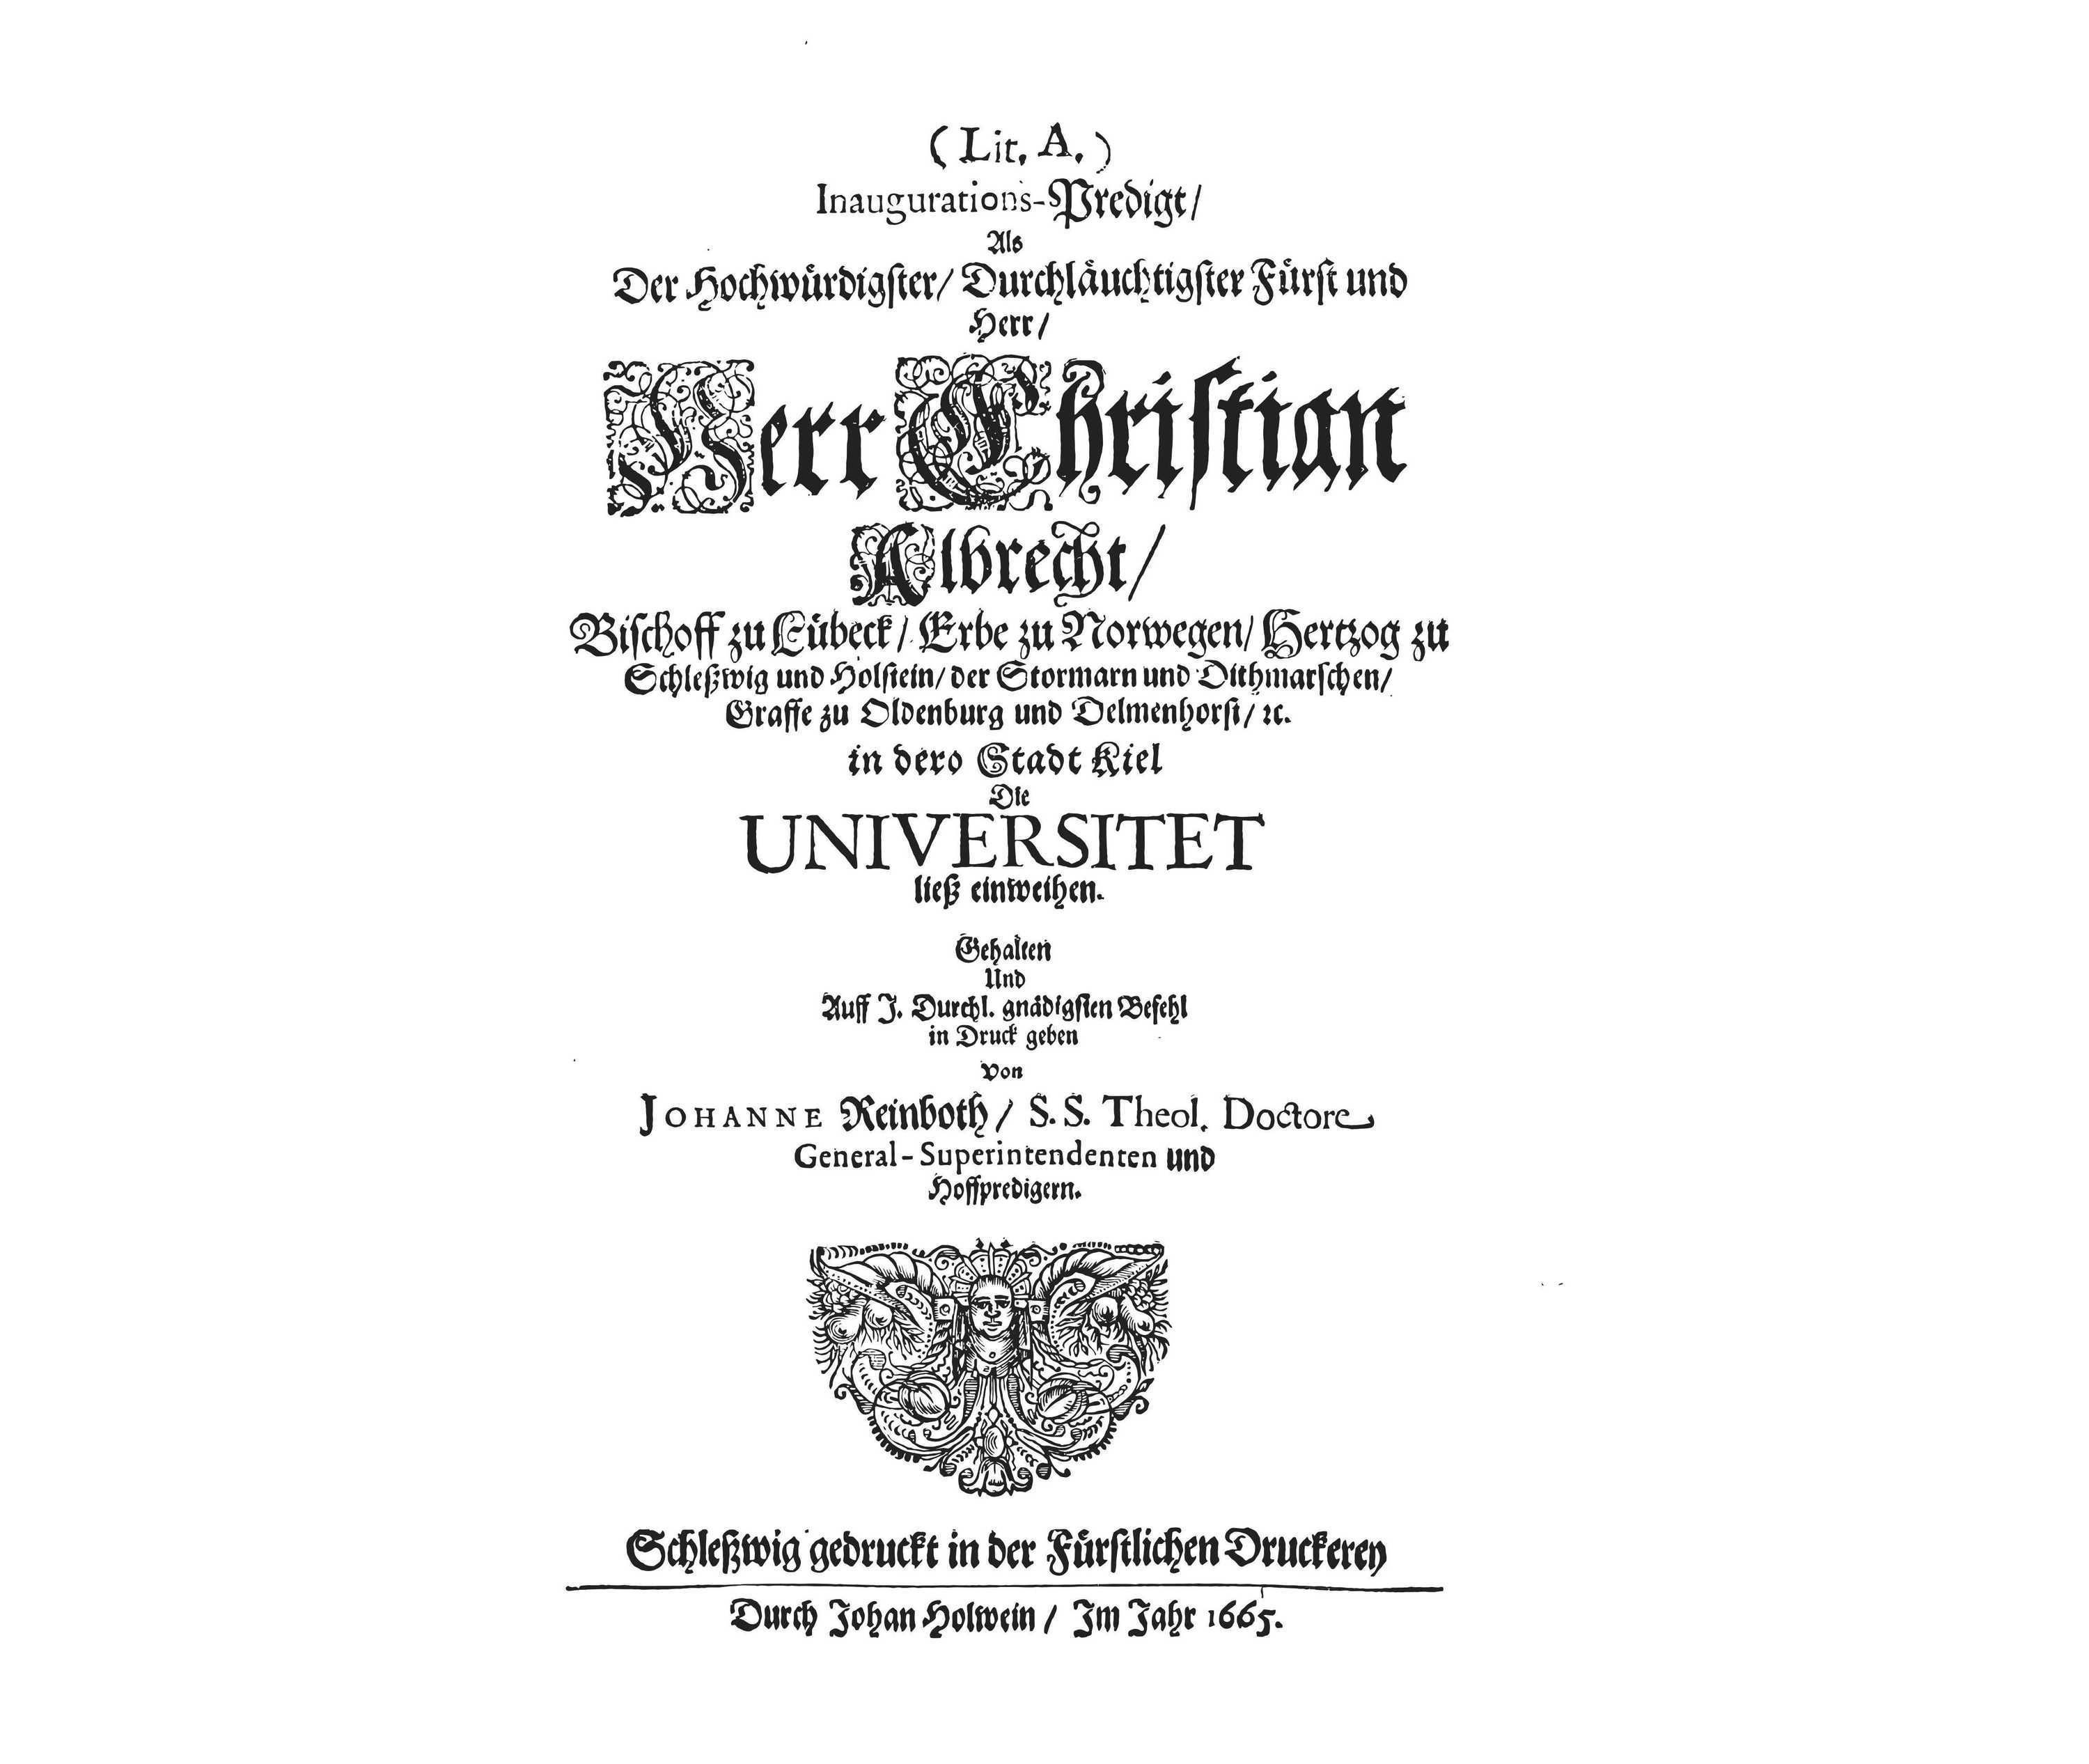 01-Festakt Einweihung Christian-Albrechts-Universität 1665